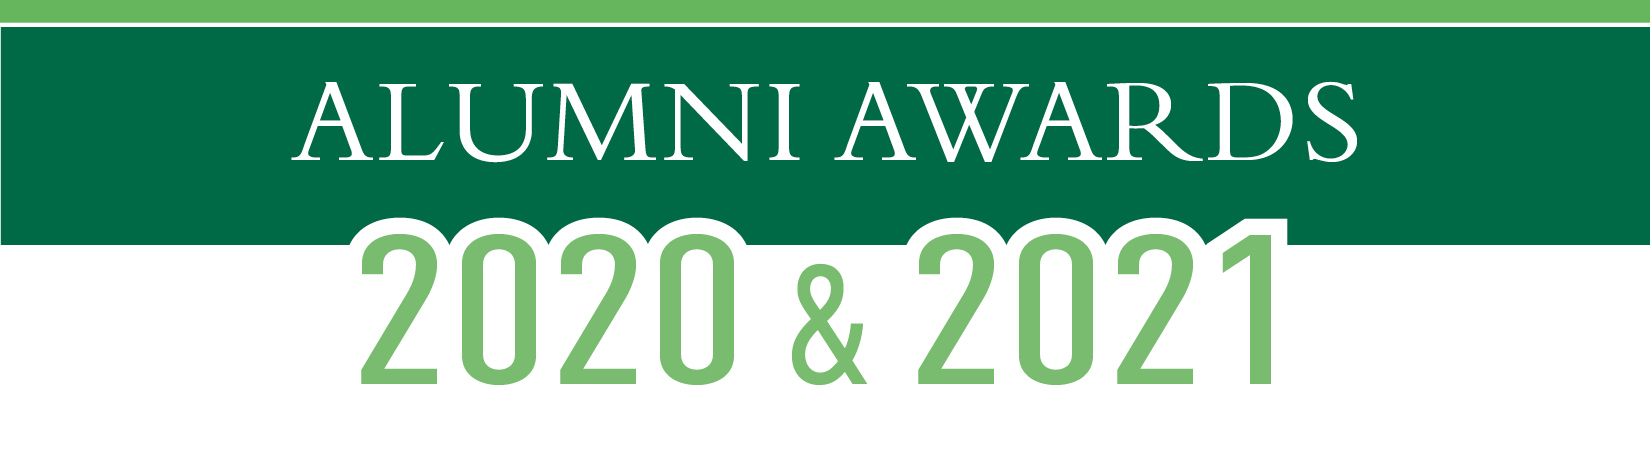 Alumni Awards 2020&2021